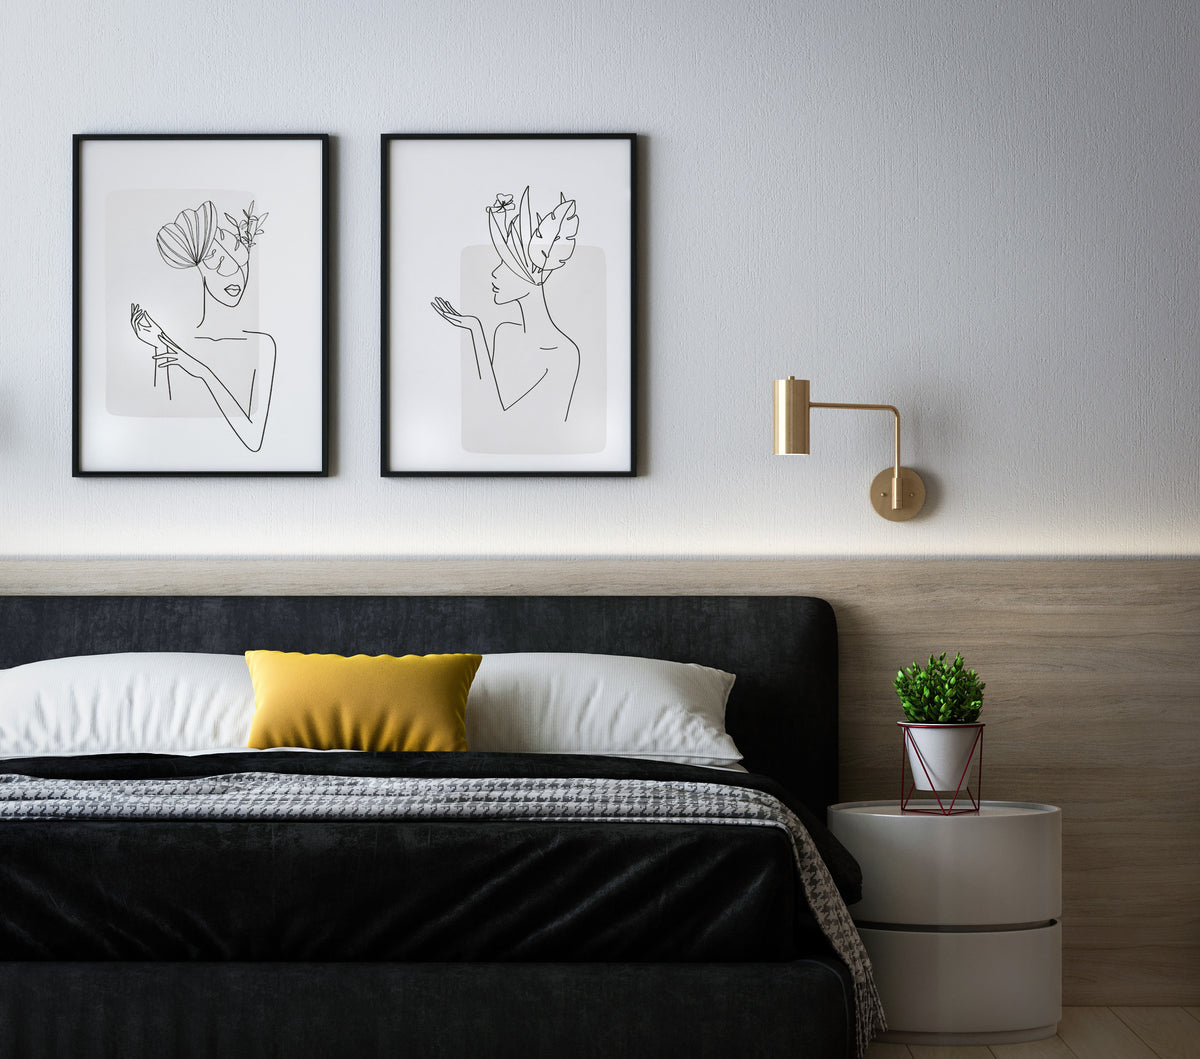 An einer Wand über einem Bett hängen zwei Bilder mit One-Line-Kunst. Neben dem Bett steht eine kleine Pflanze auf einem weissen Nachttisch.